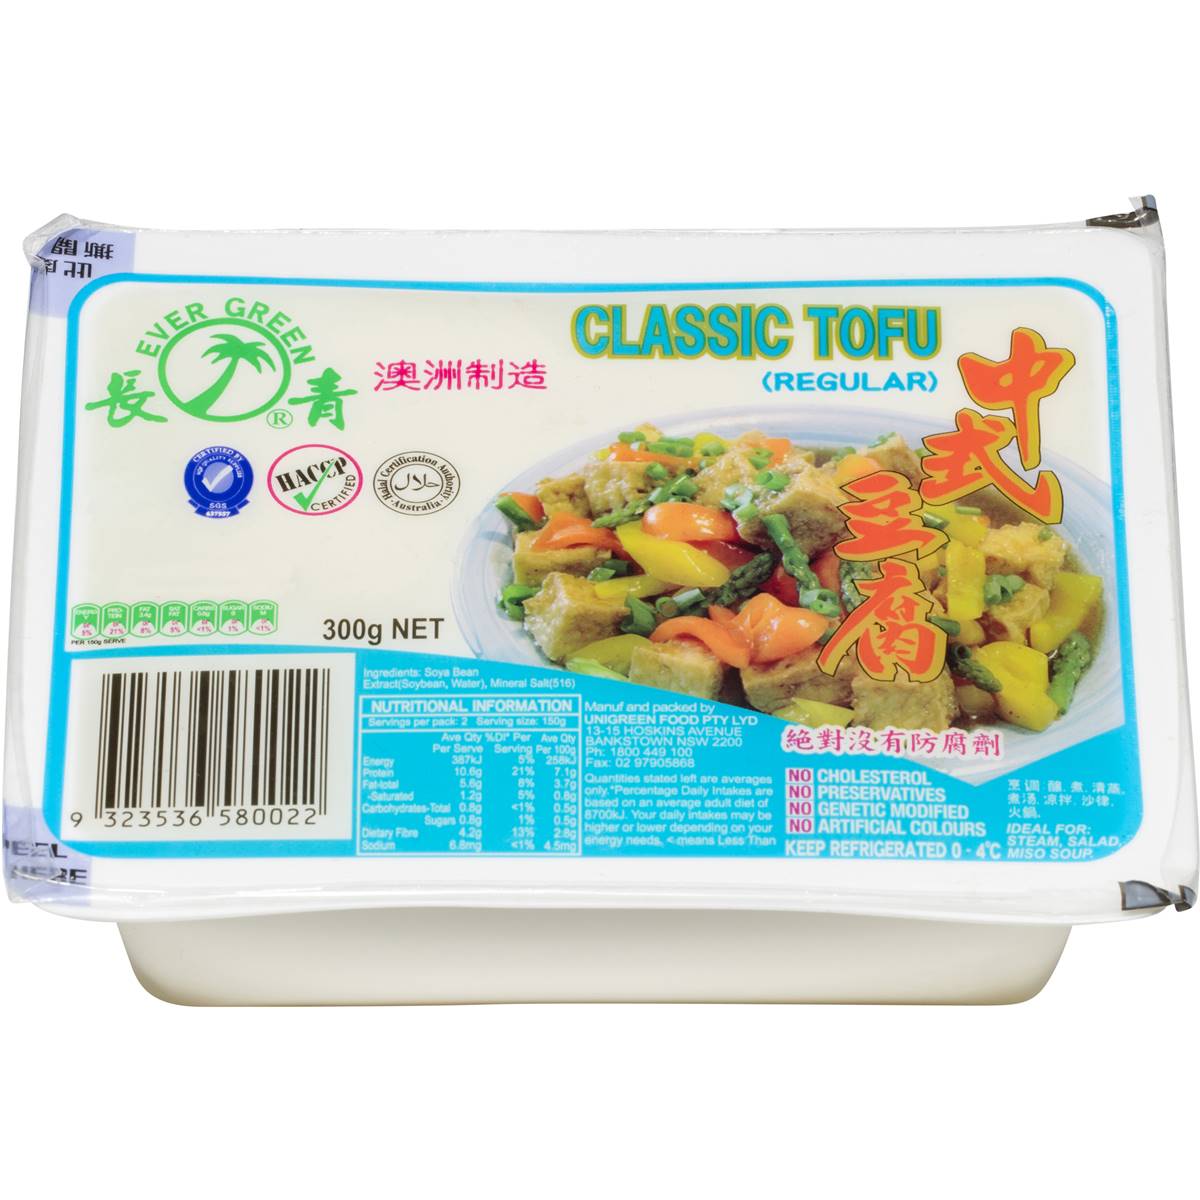 Calories in Evergreen Classic Tofu